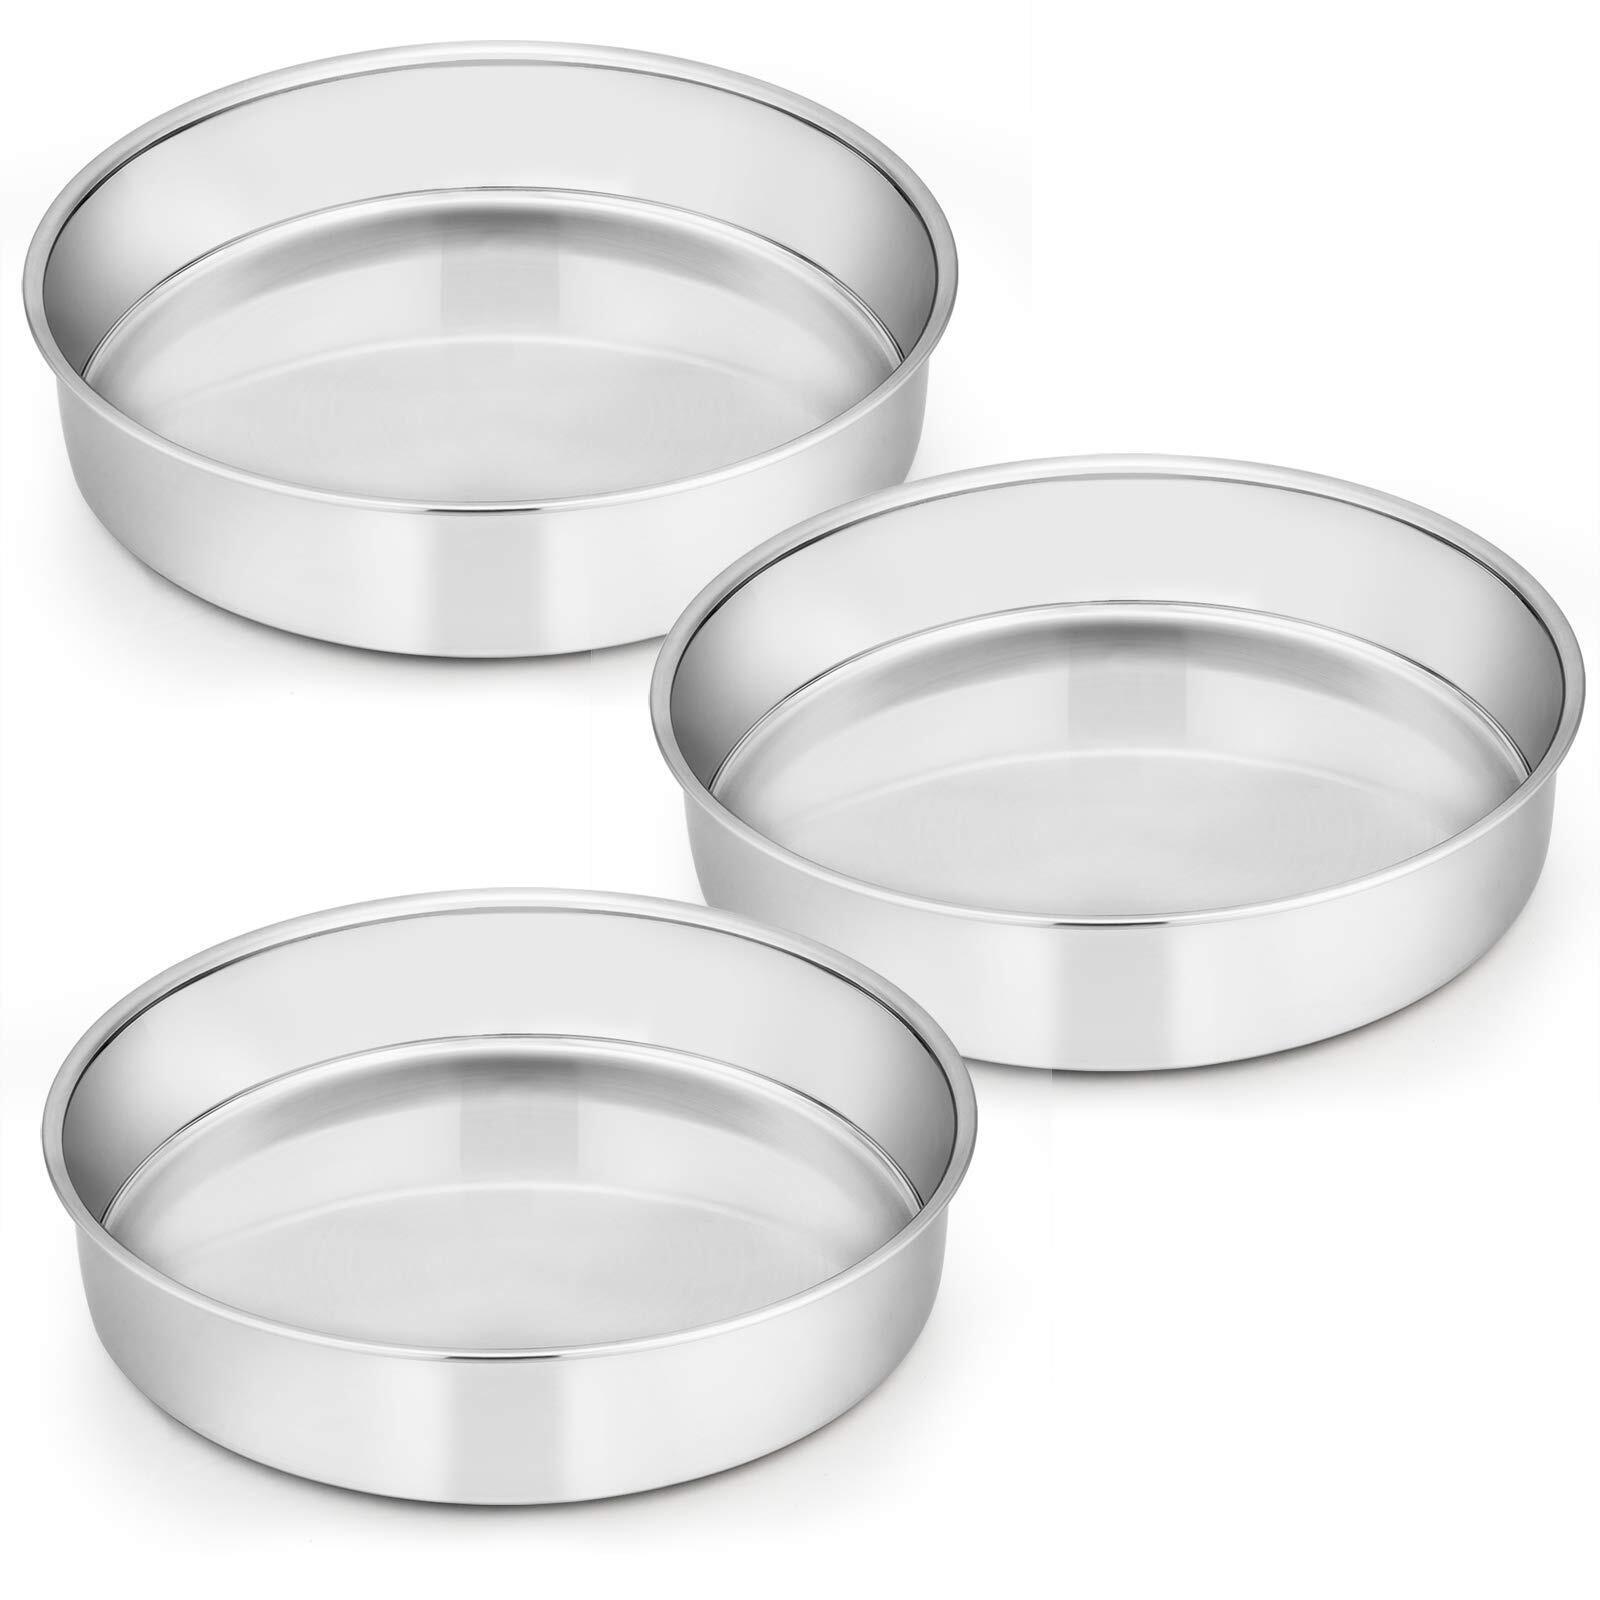 9½ Inch Cake Pan Set of 3, Stainless Steel Round Cake Baking Pans, Non-Toxic ...